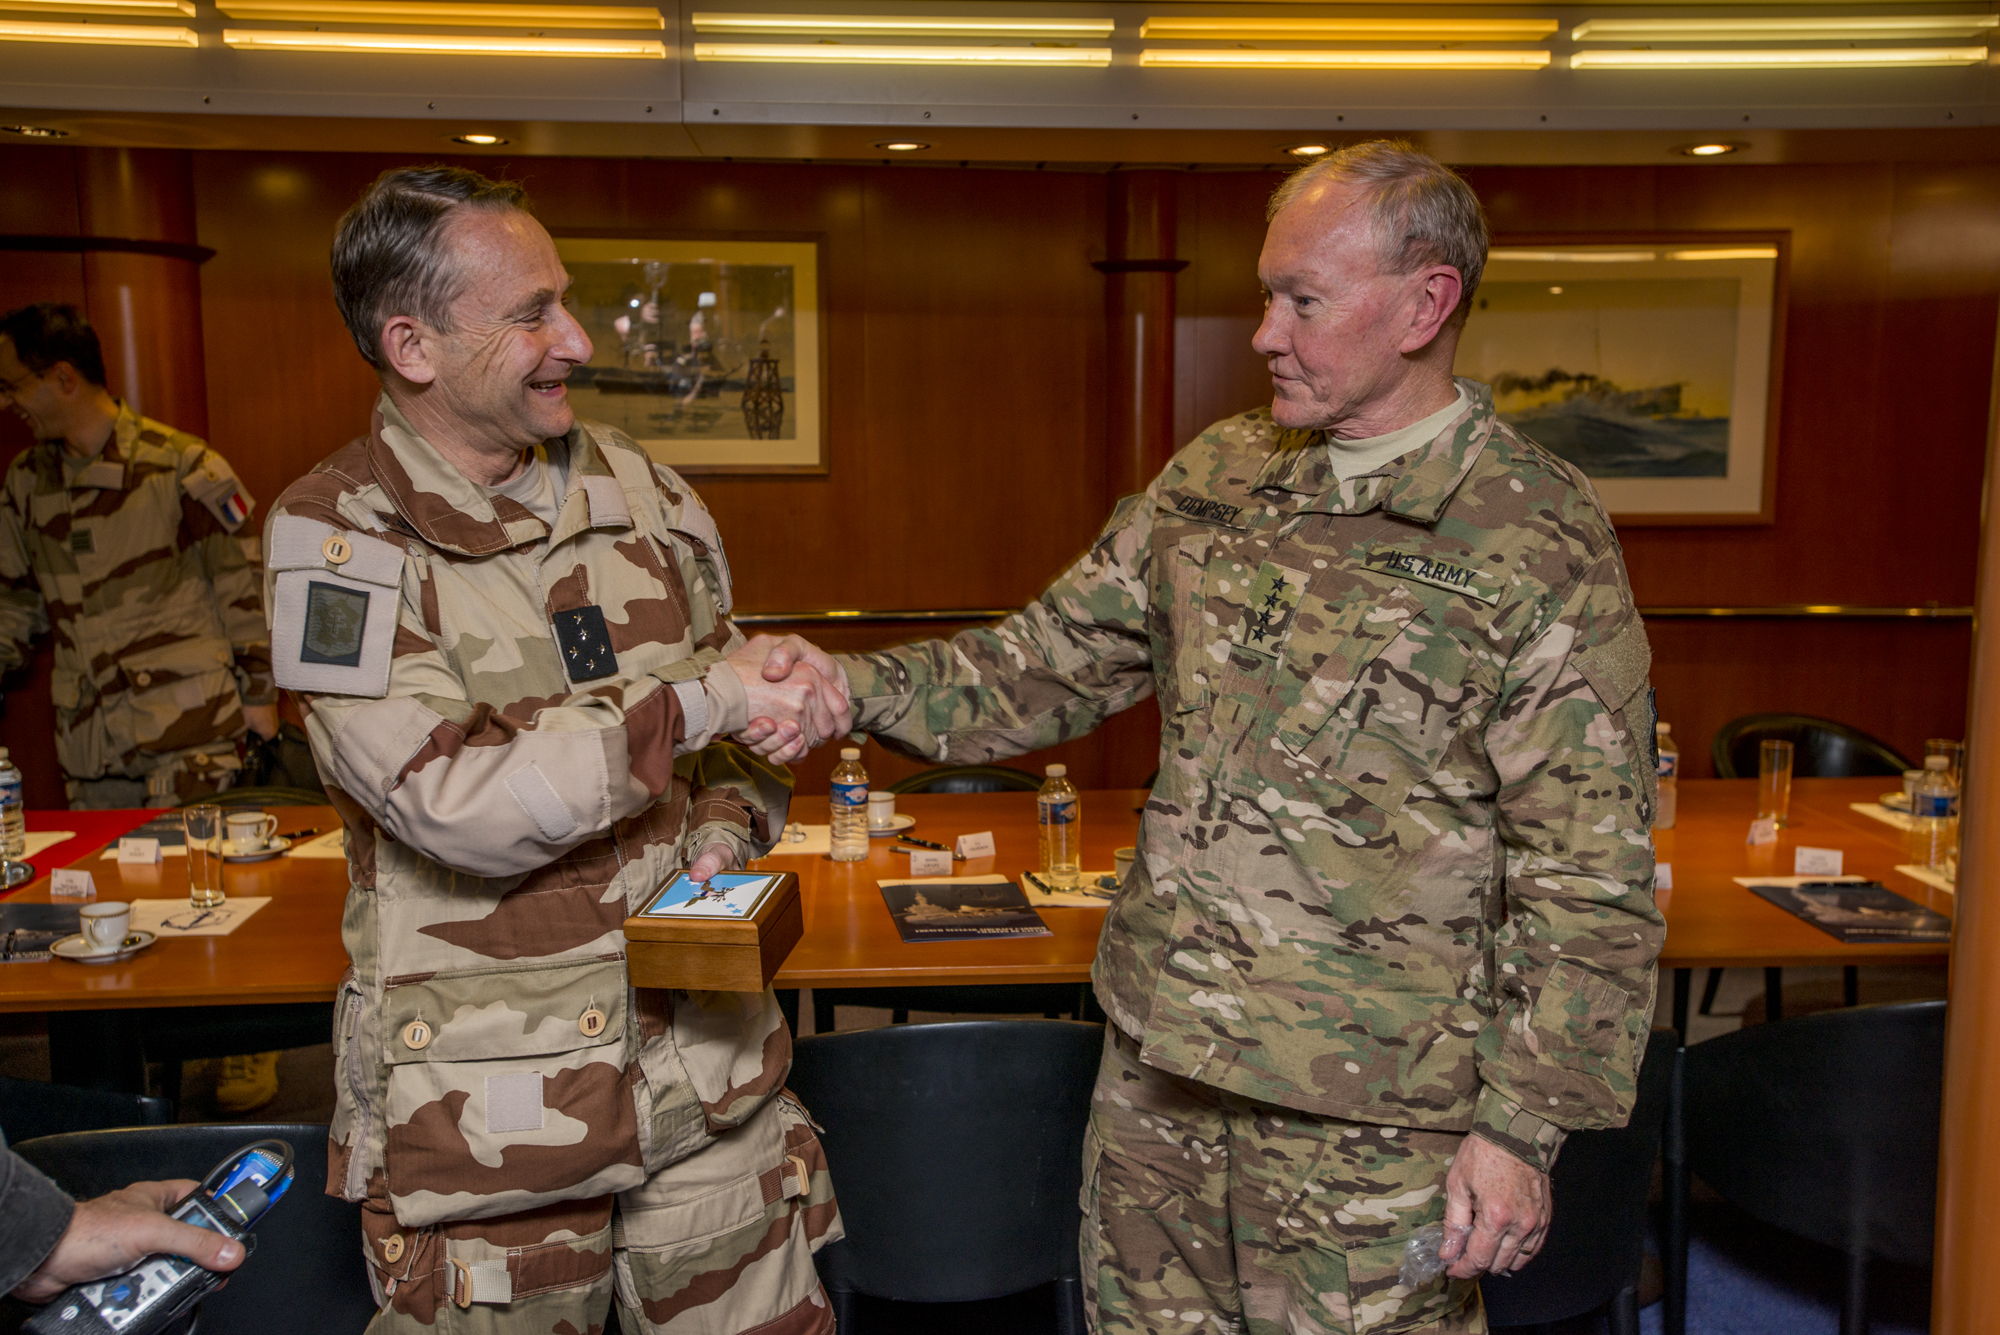 Le chef d’état-major des armées et son homologue américain échangent des cadeaux